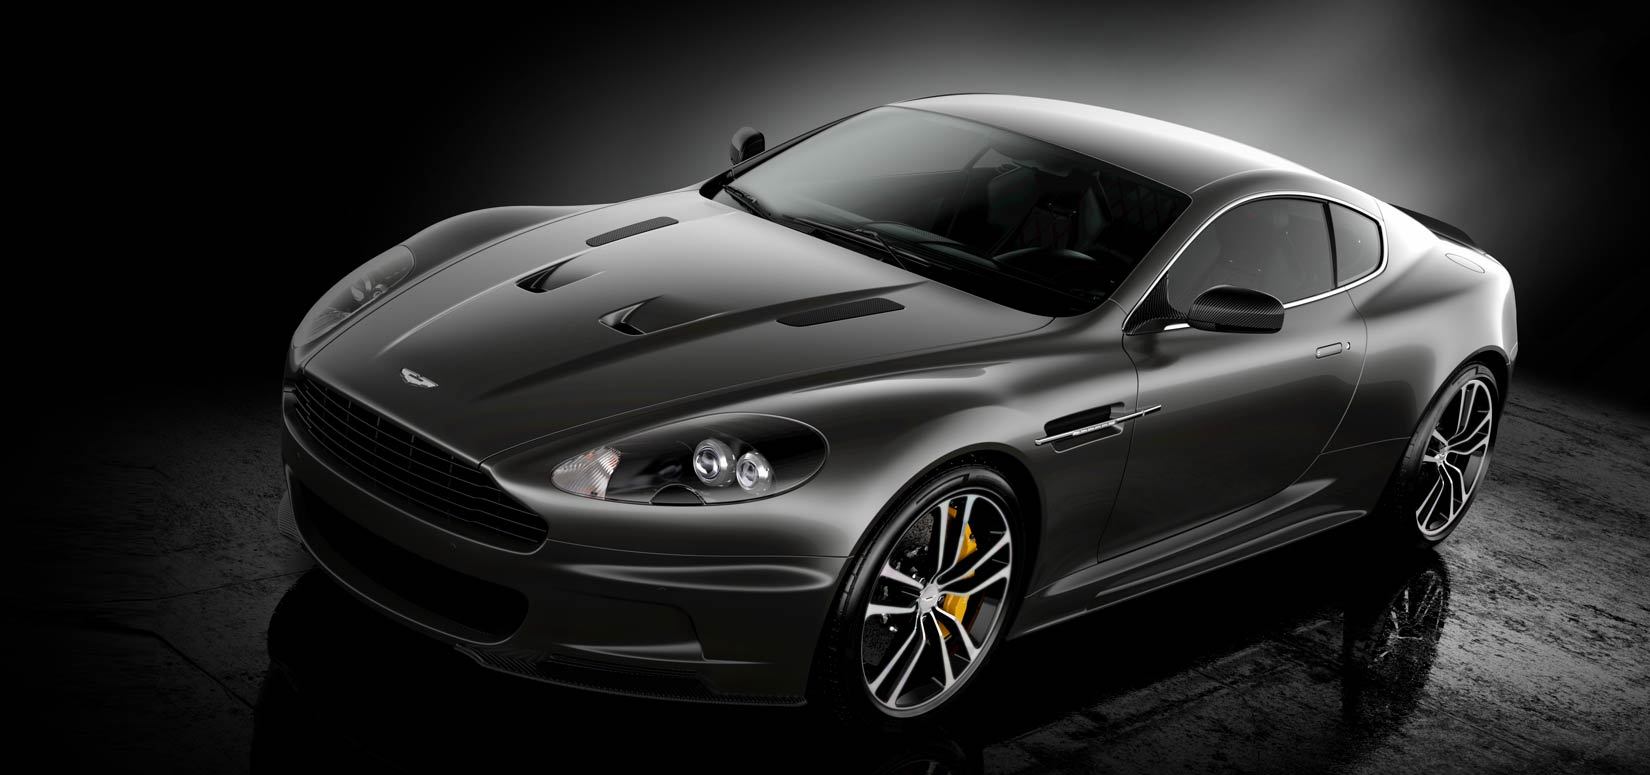 Aston Martin DBS va ieşi din producţie în curând. 